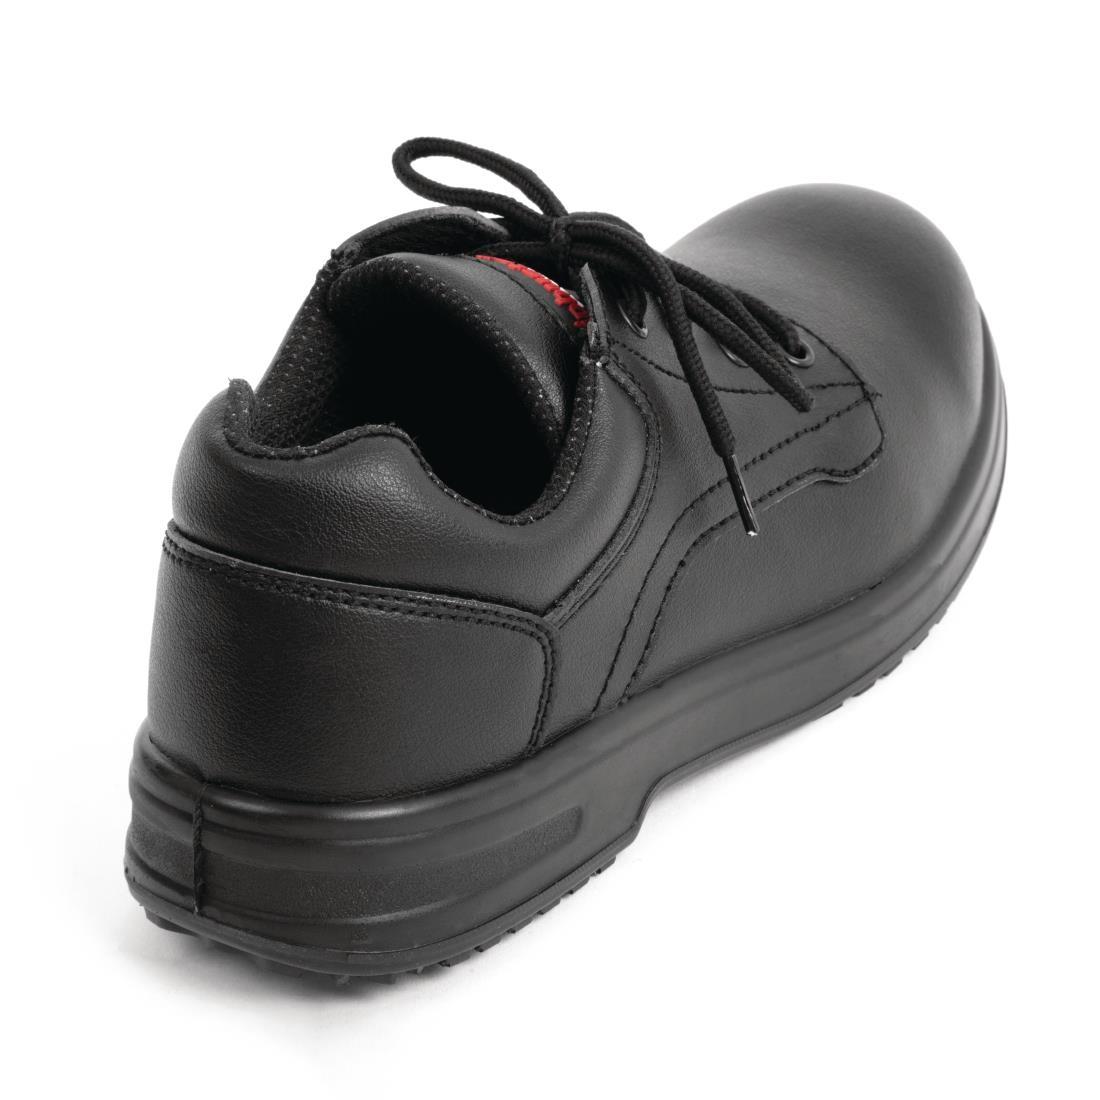 Slipbuster Basic Shoes Slip Resistant Black 37 - BB498-37  - 3